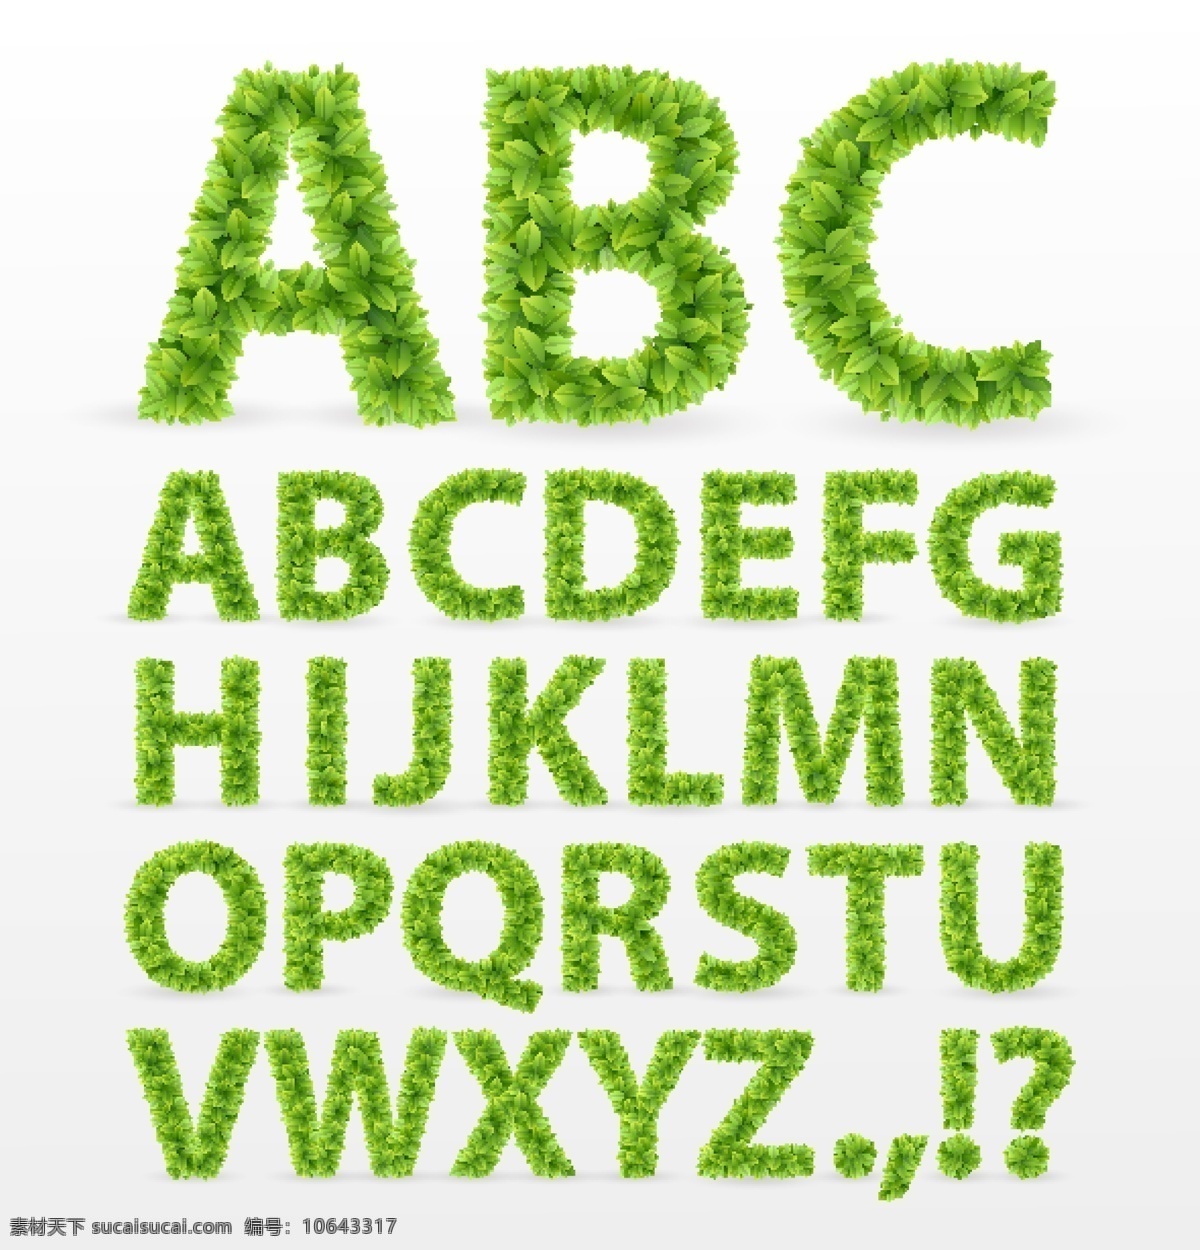 字母 卡通字母 英文字母 绿叶 字母设计 英文 拼音 创意字母 时尚字母 时尚 手绘 装饰 字母主题 其他设计 矢量